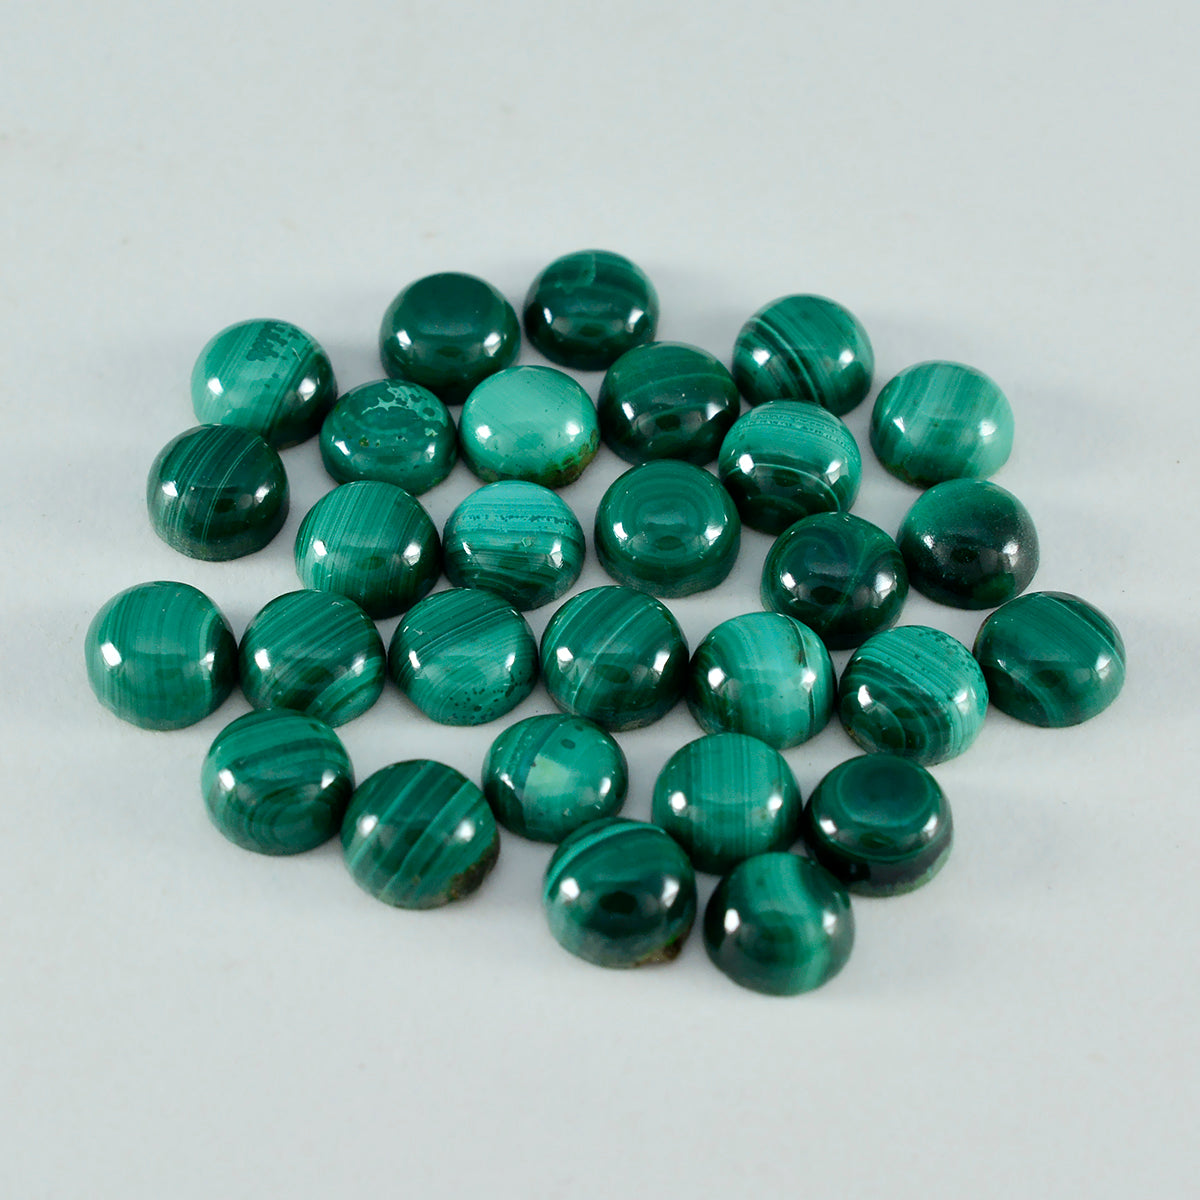 Riyogems 1PC groene malachiet cabochon 6x6 mm ronde vorm uitstekende kwaliteit losse edelsteen